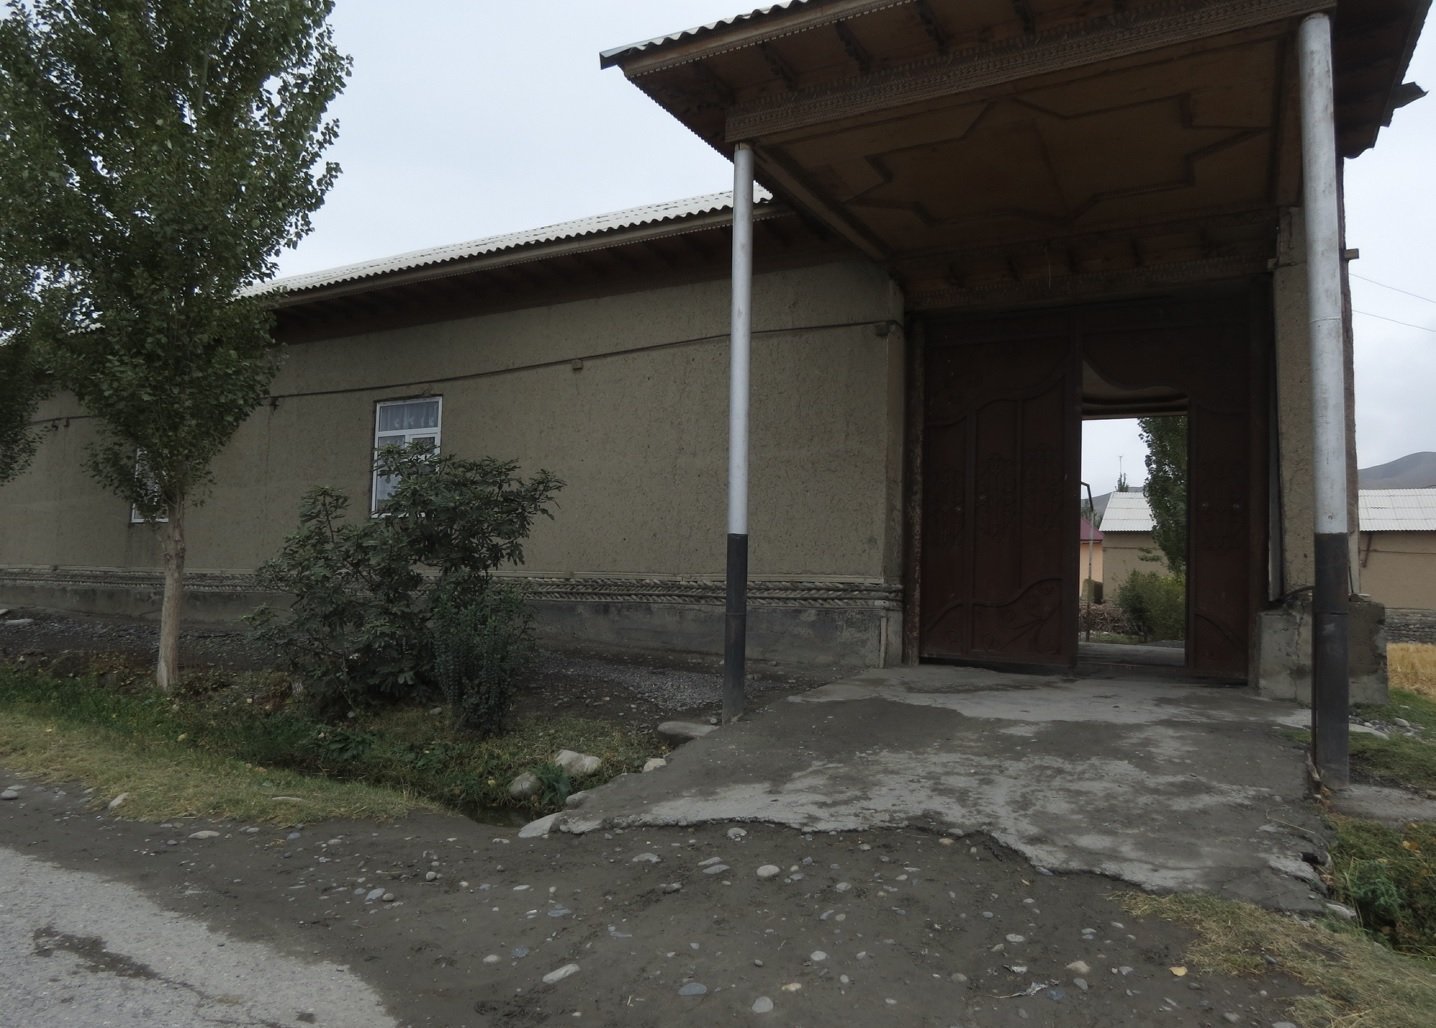 Вдоль улицы стоят типично узбекские дома: огромные усадьбы с глухими фасадами и мощными дарвазами.